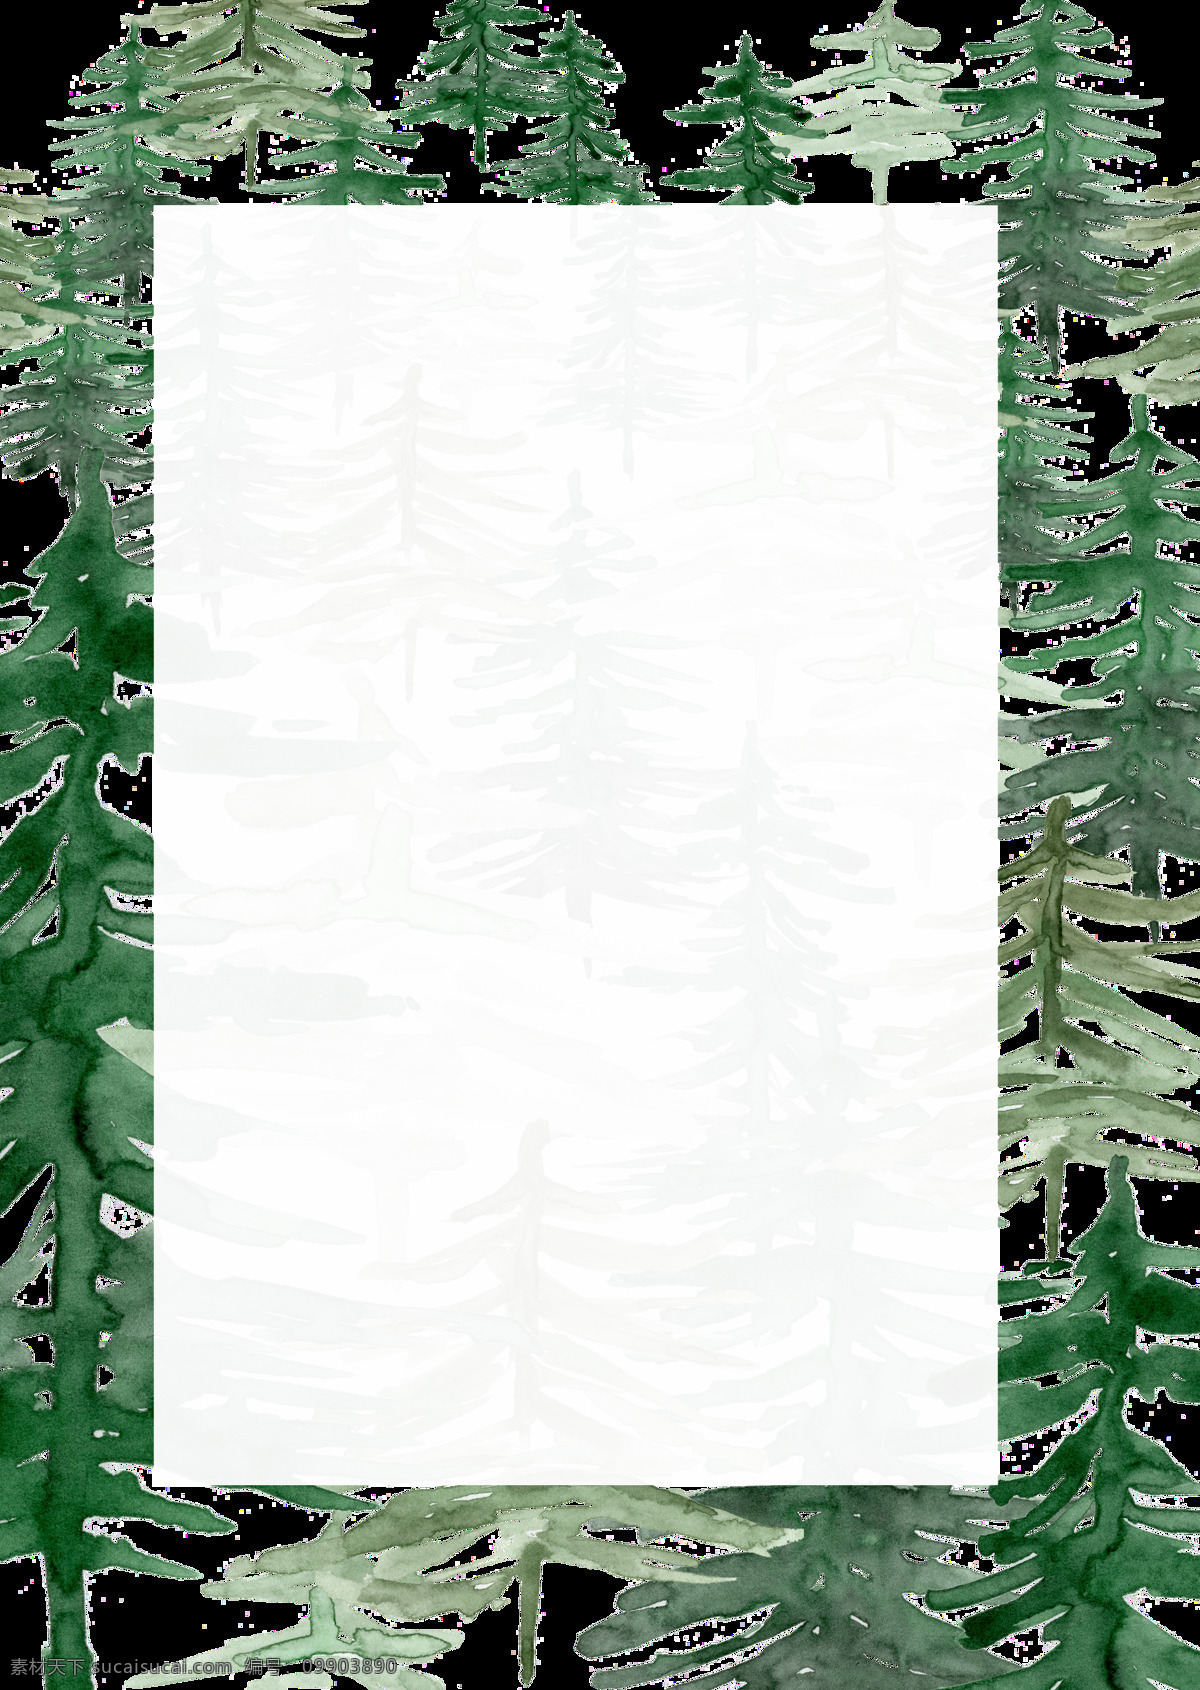 绿色 水彩 手绘 森林 边框 透明 卡通 透明素材 免扣素材 装饰图案